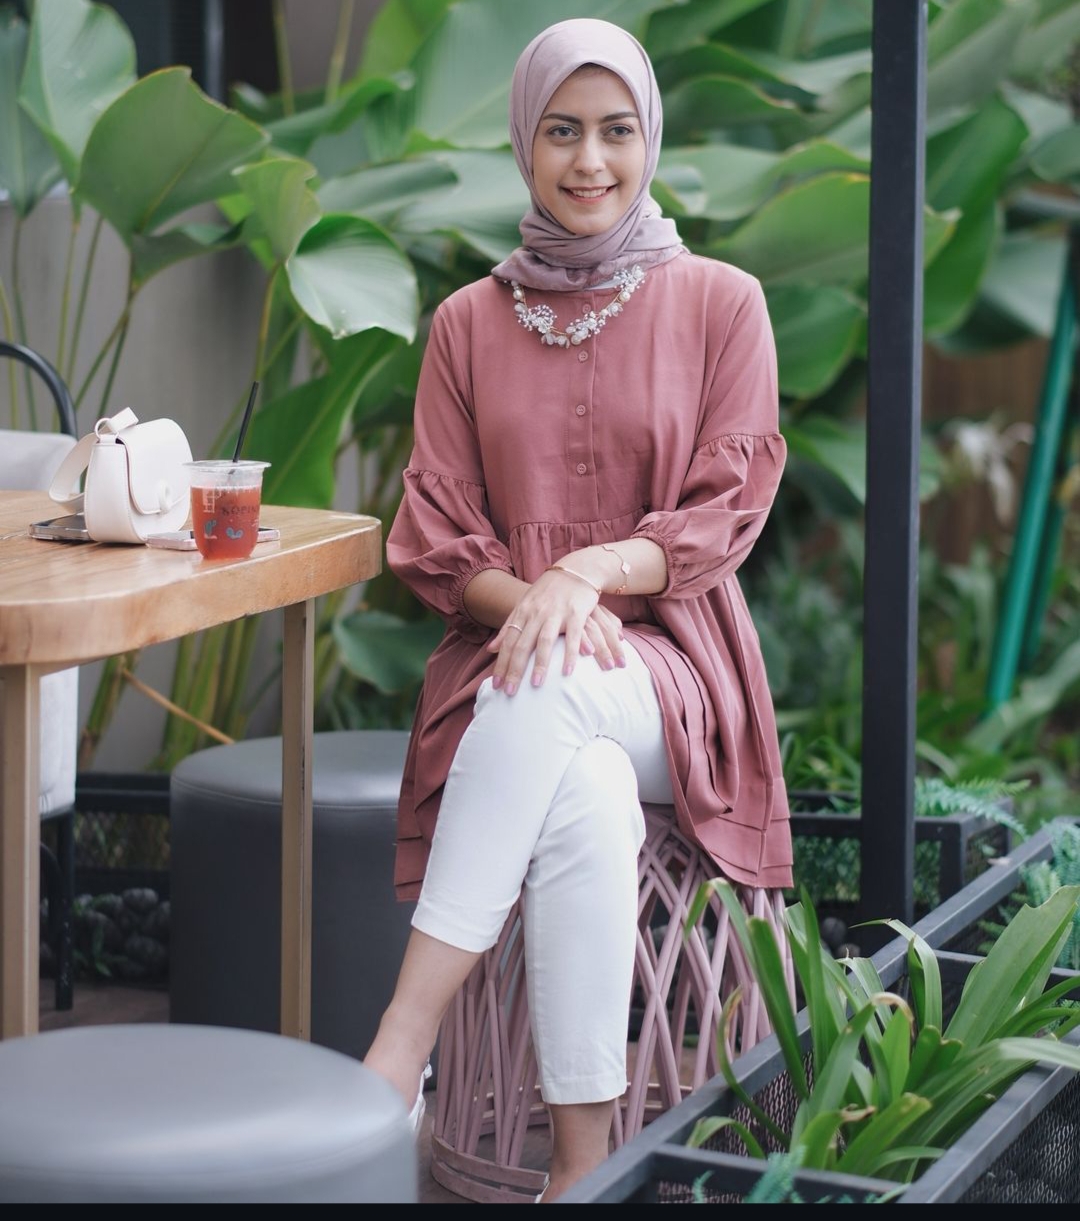 6 Rekomendasi Jilbab yang Cocok dengan Baju Warna Mauve, Tampil Modis dan Cantik